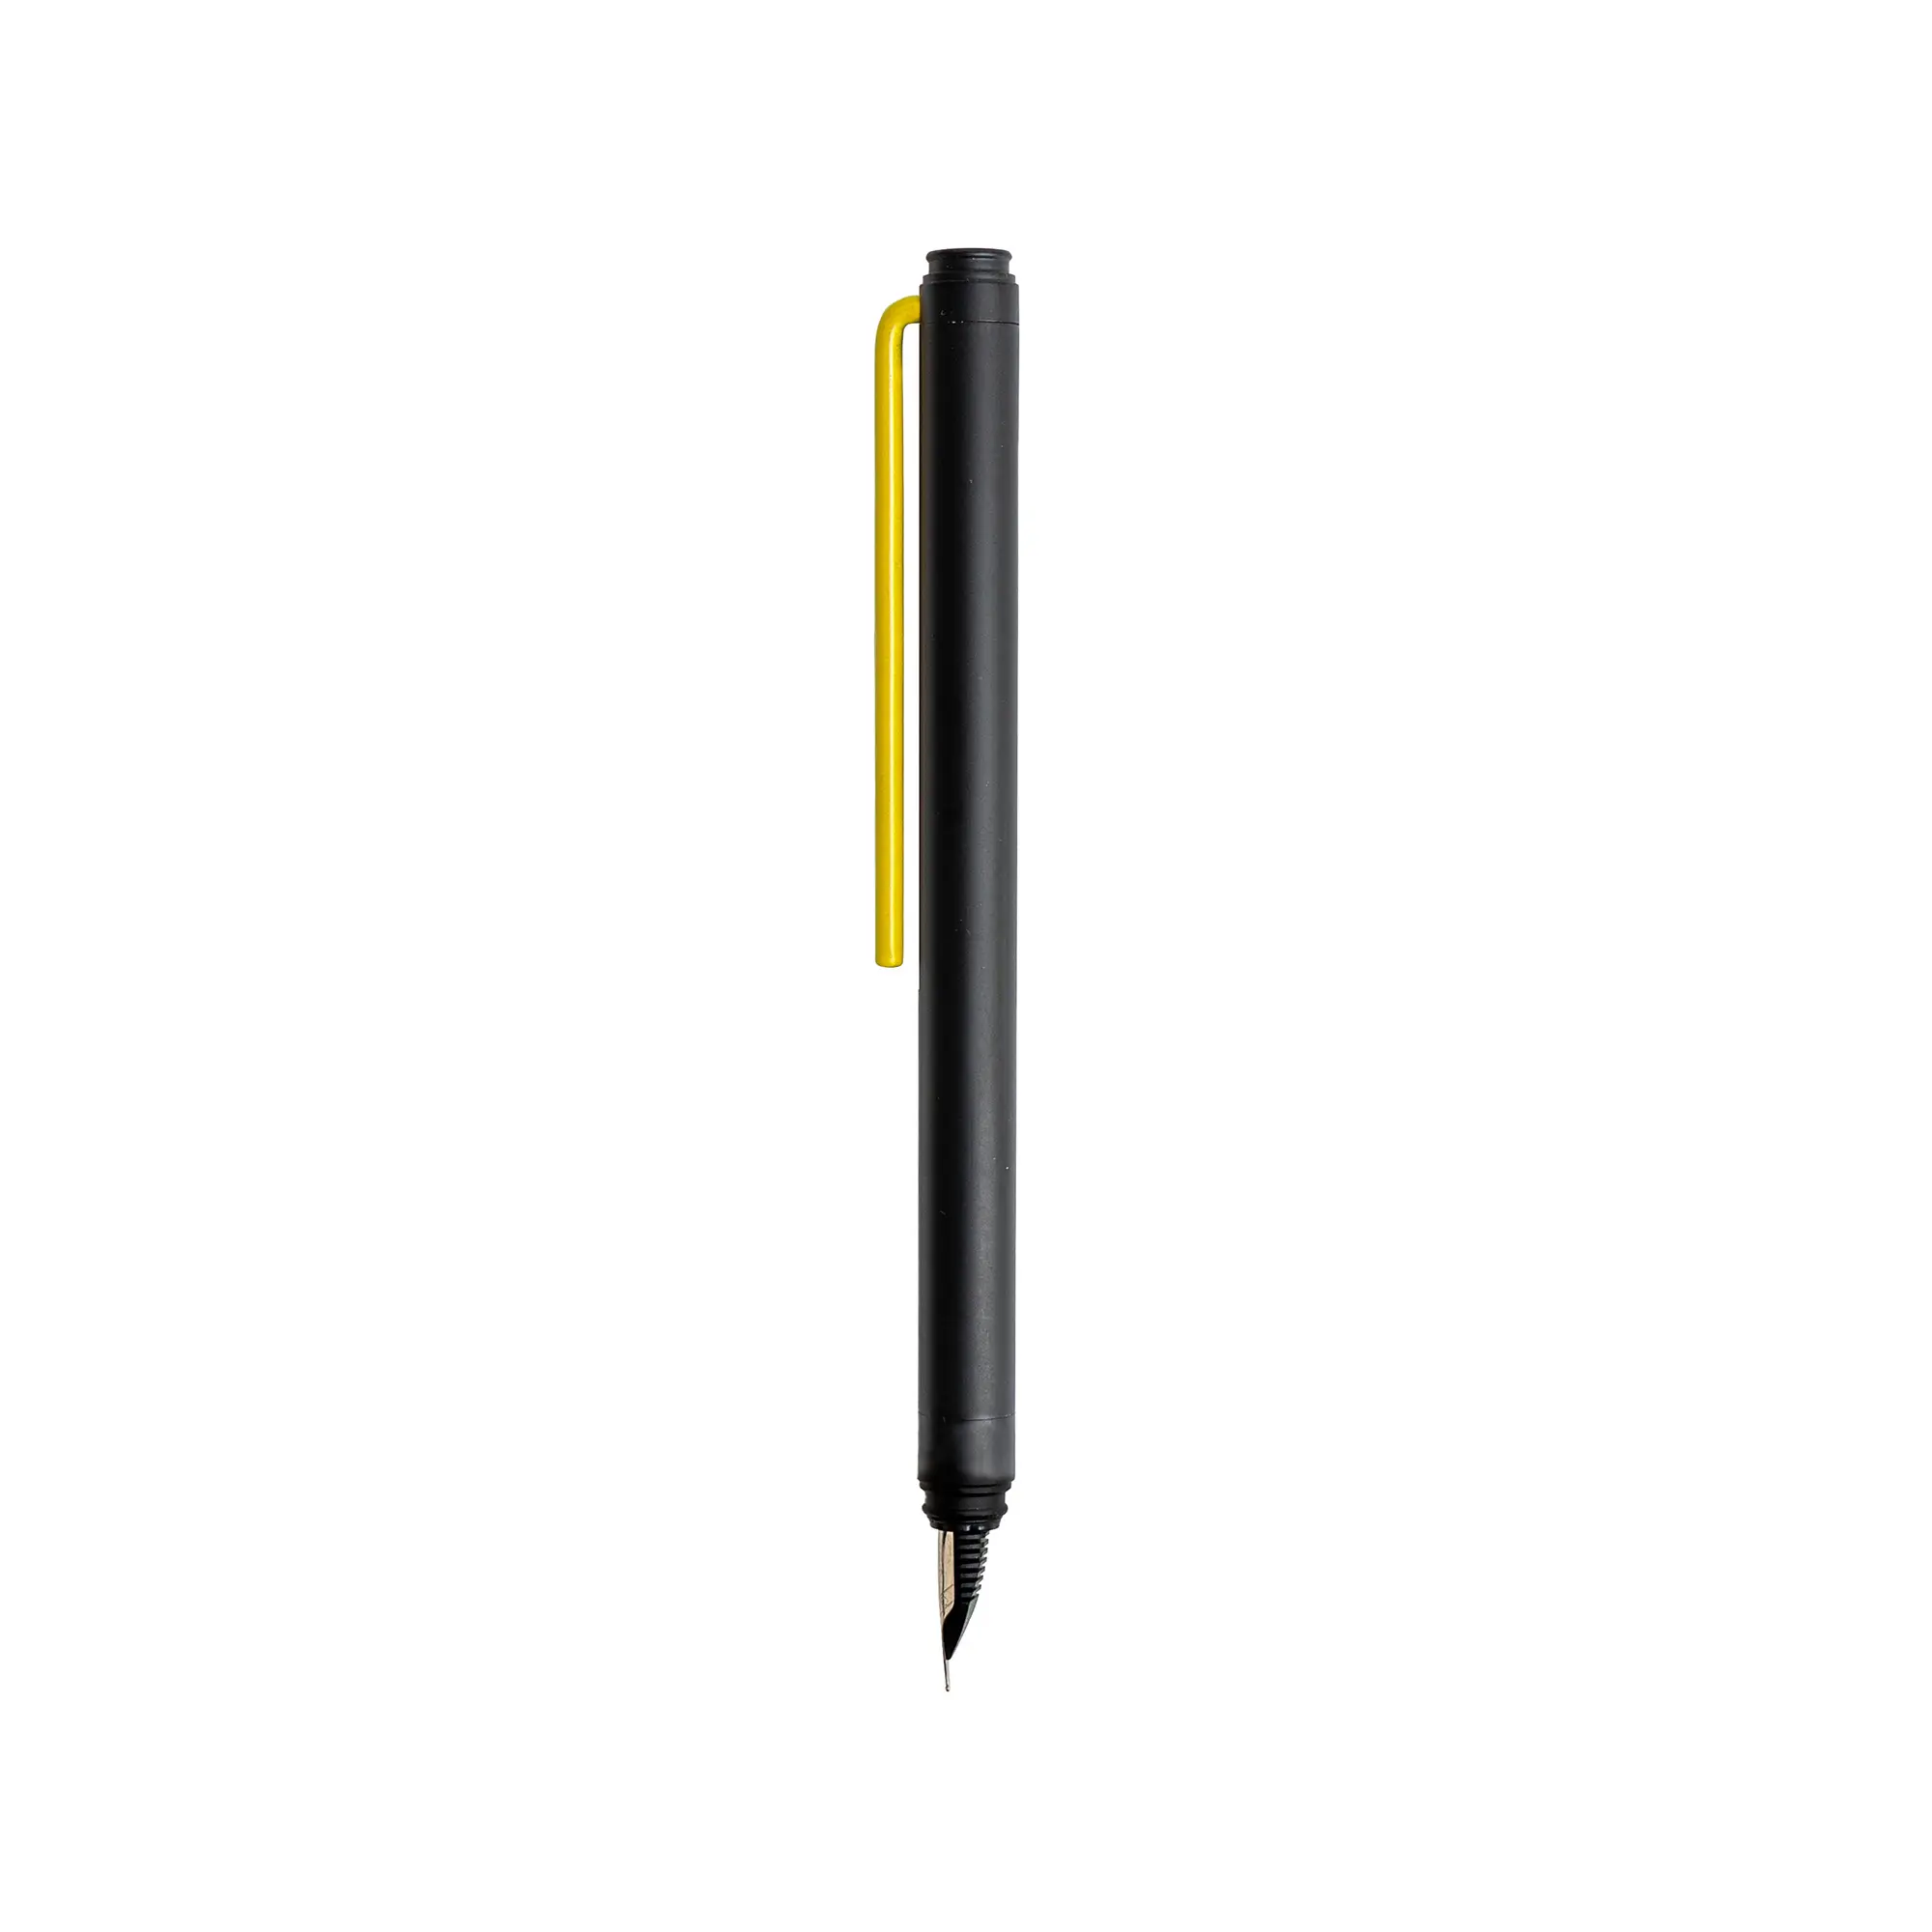 Grafeex dolma kalem tasarım couyellow sarı klip ve Nib orta özel Logo ile İtalya'da promosyon hediye için Ideal